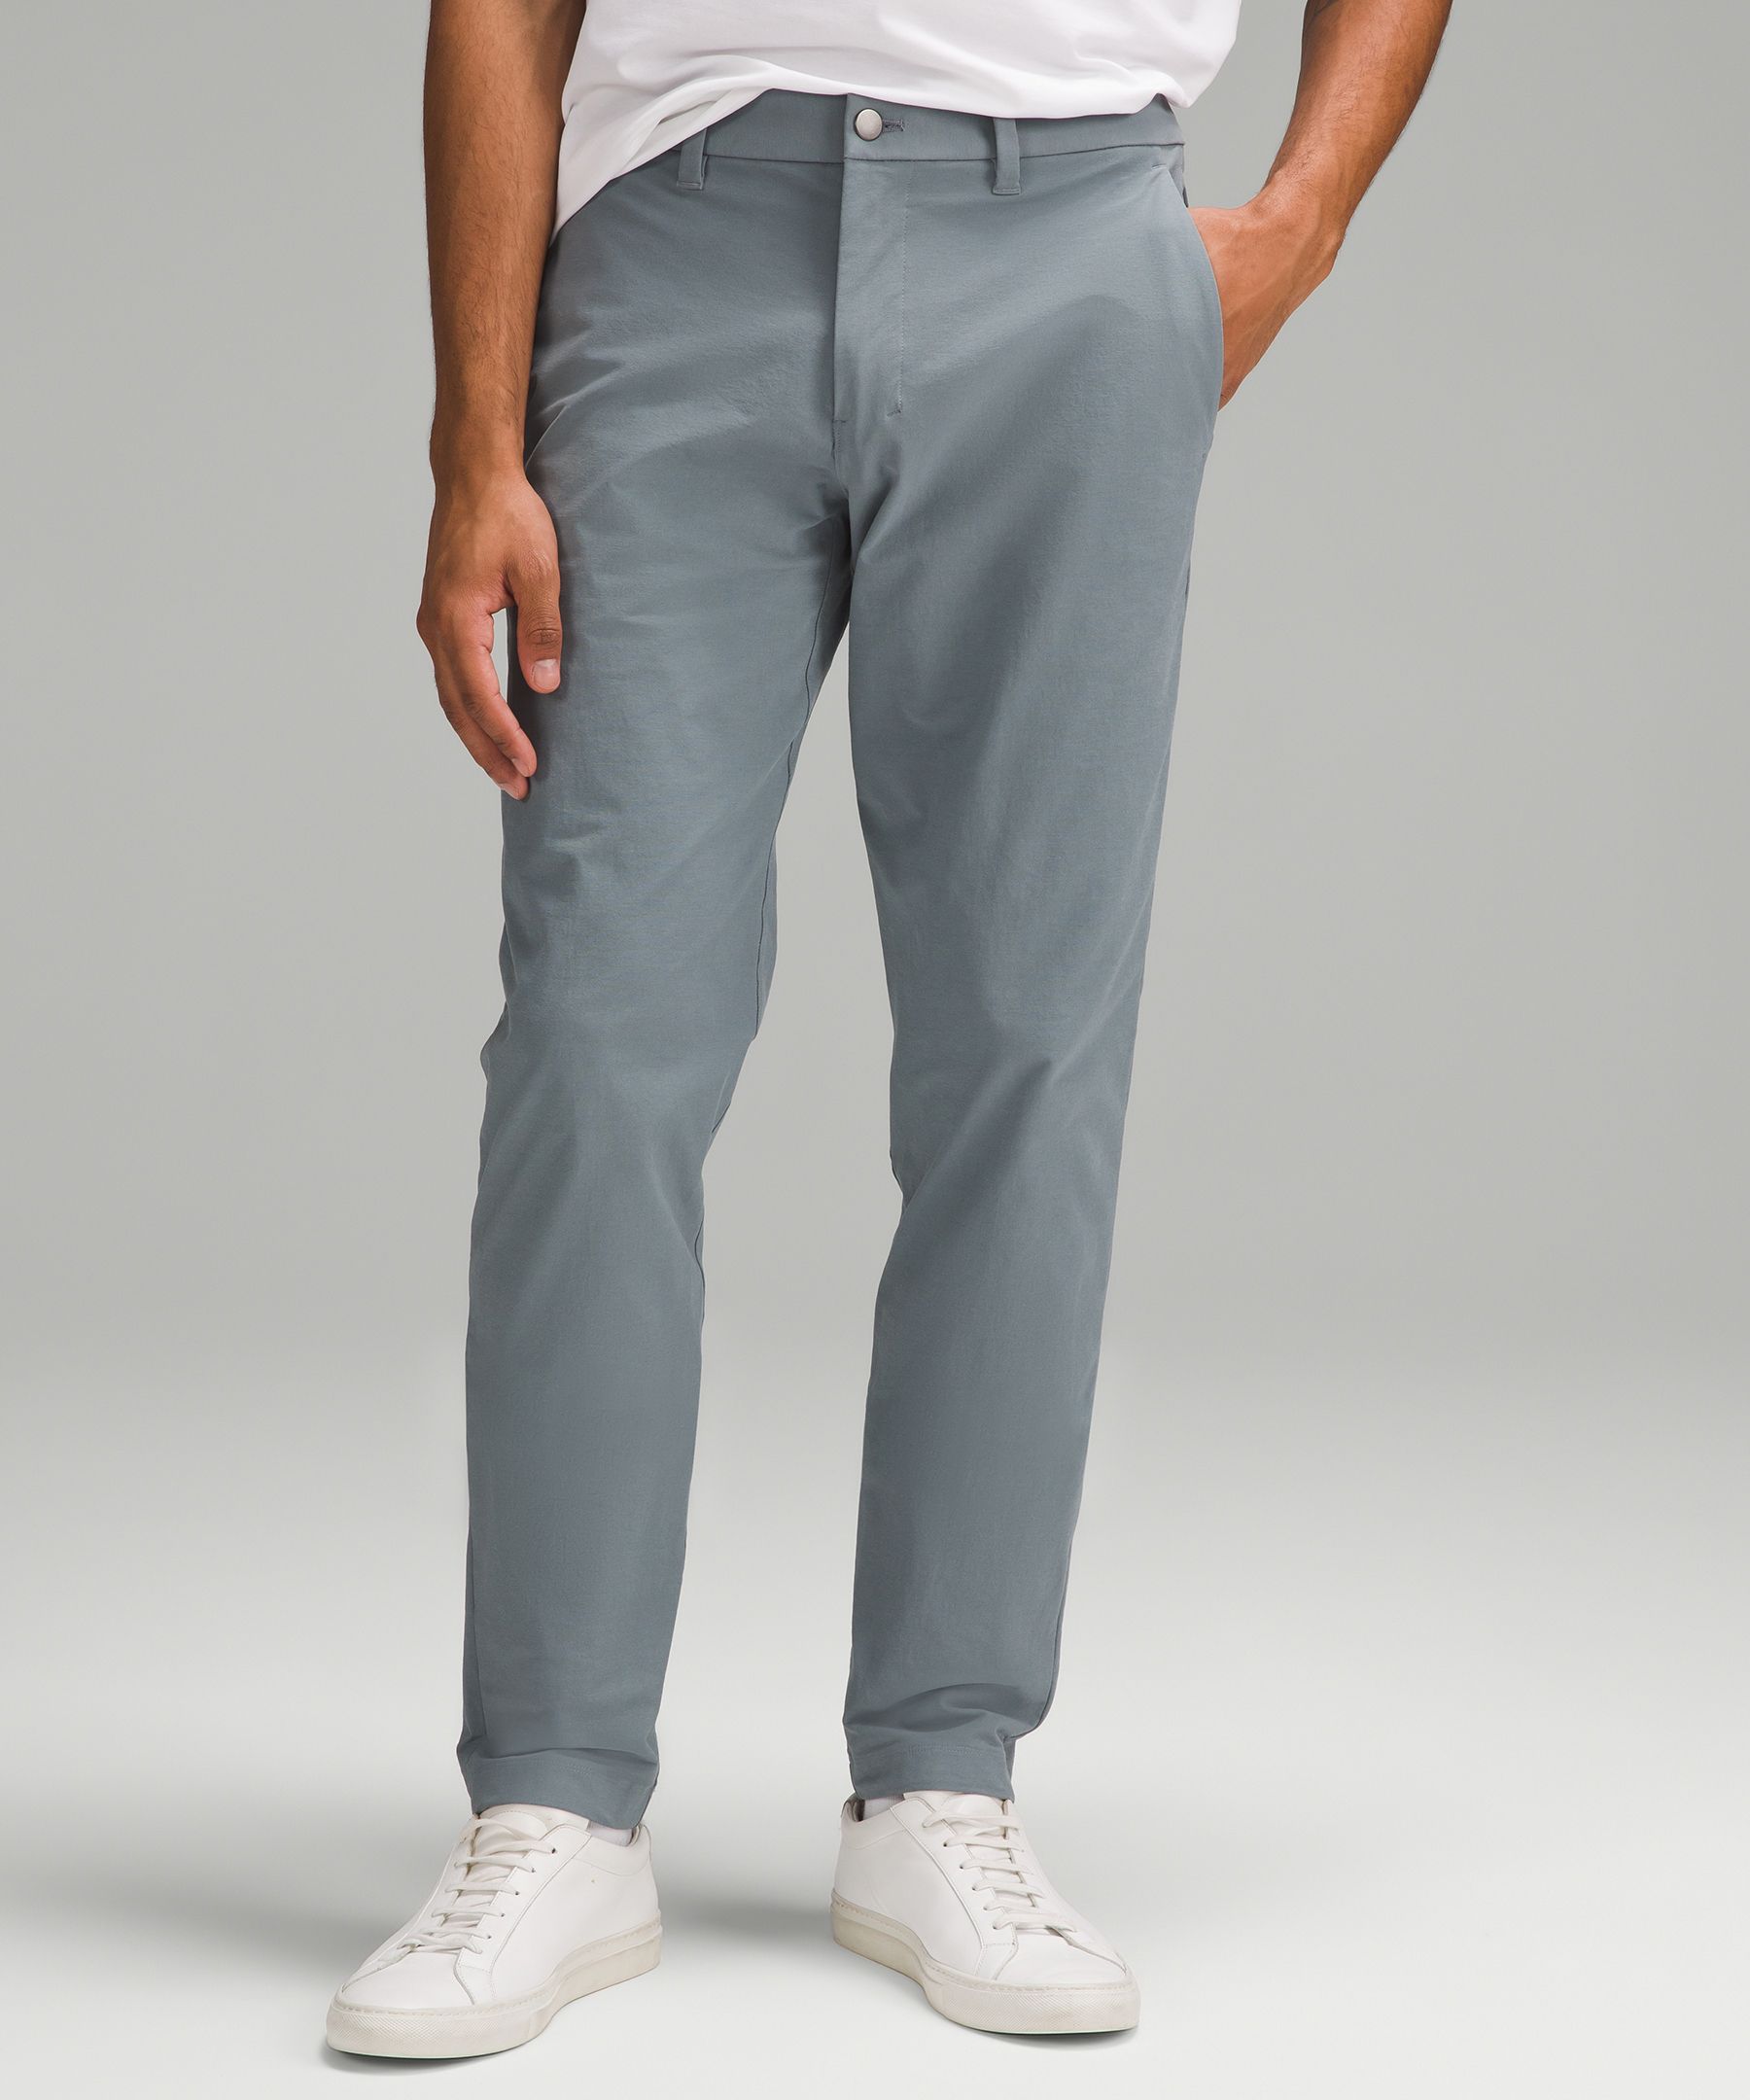 ABC Slim-Fit Trouser 34"L *Stretch Cotton VersaTwill | Men's Trousers